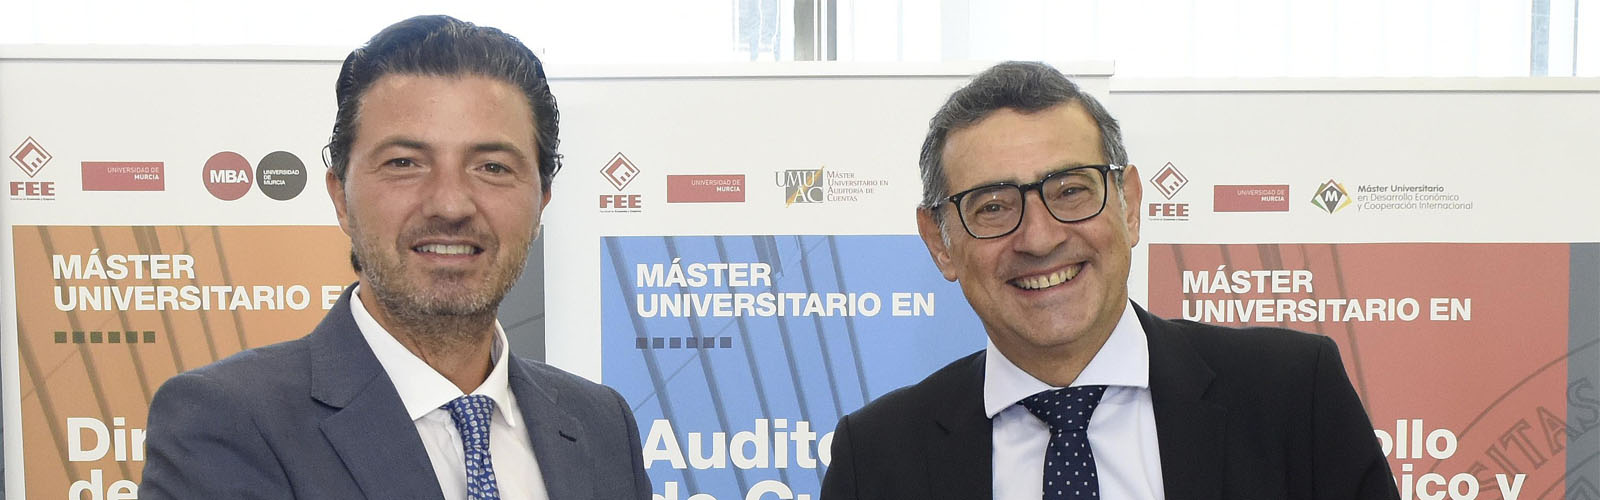 La Cátedra FREMM de la Universidad de Murcia comienza su andadura